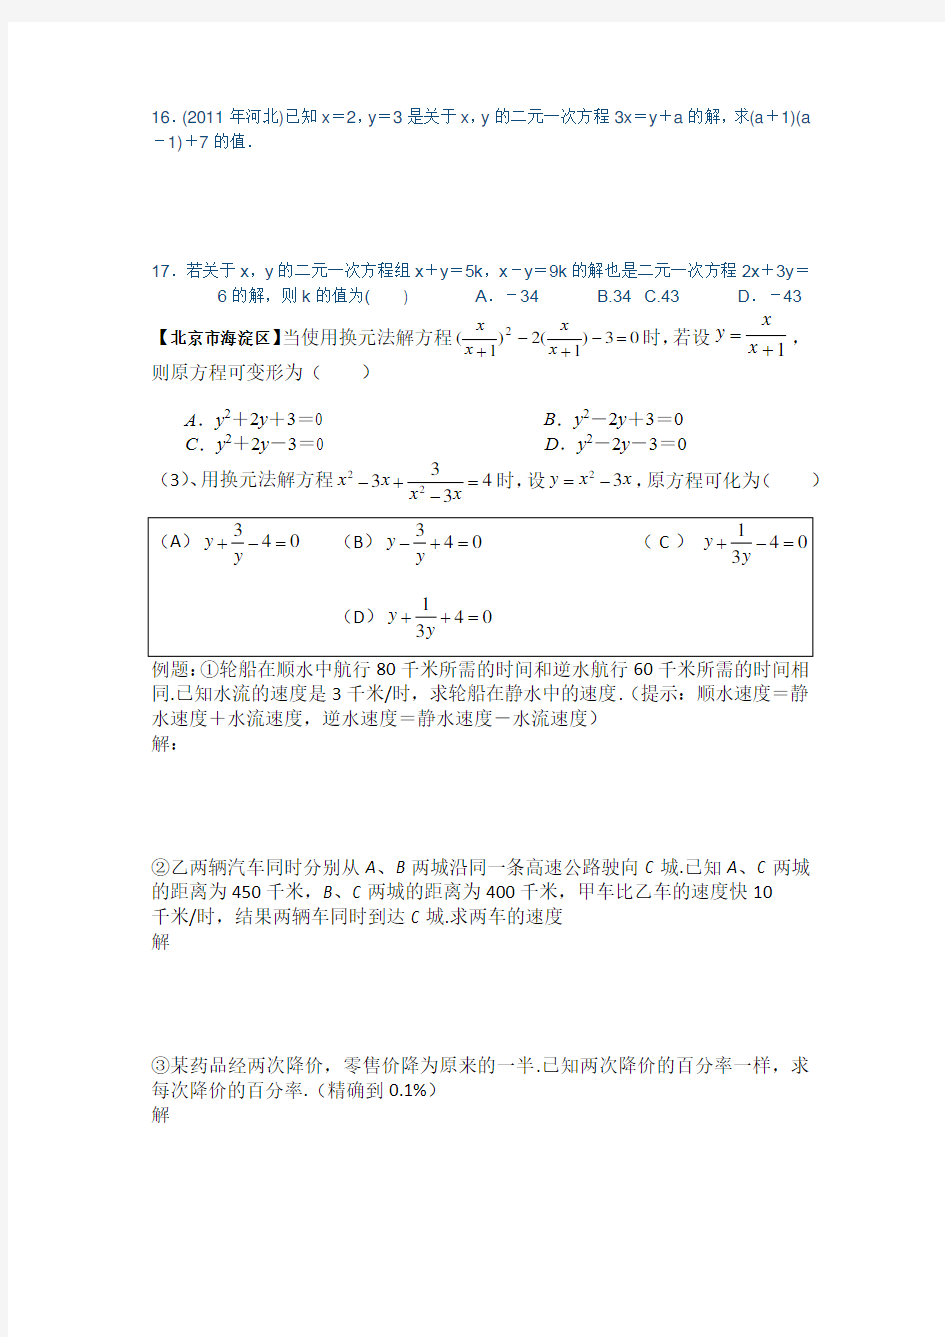 (完整版)初三中考数学方程组练习题及答案